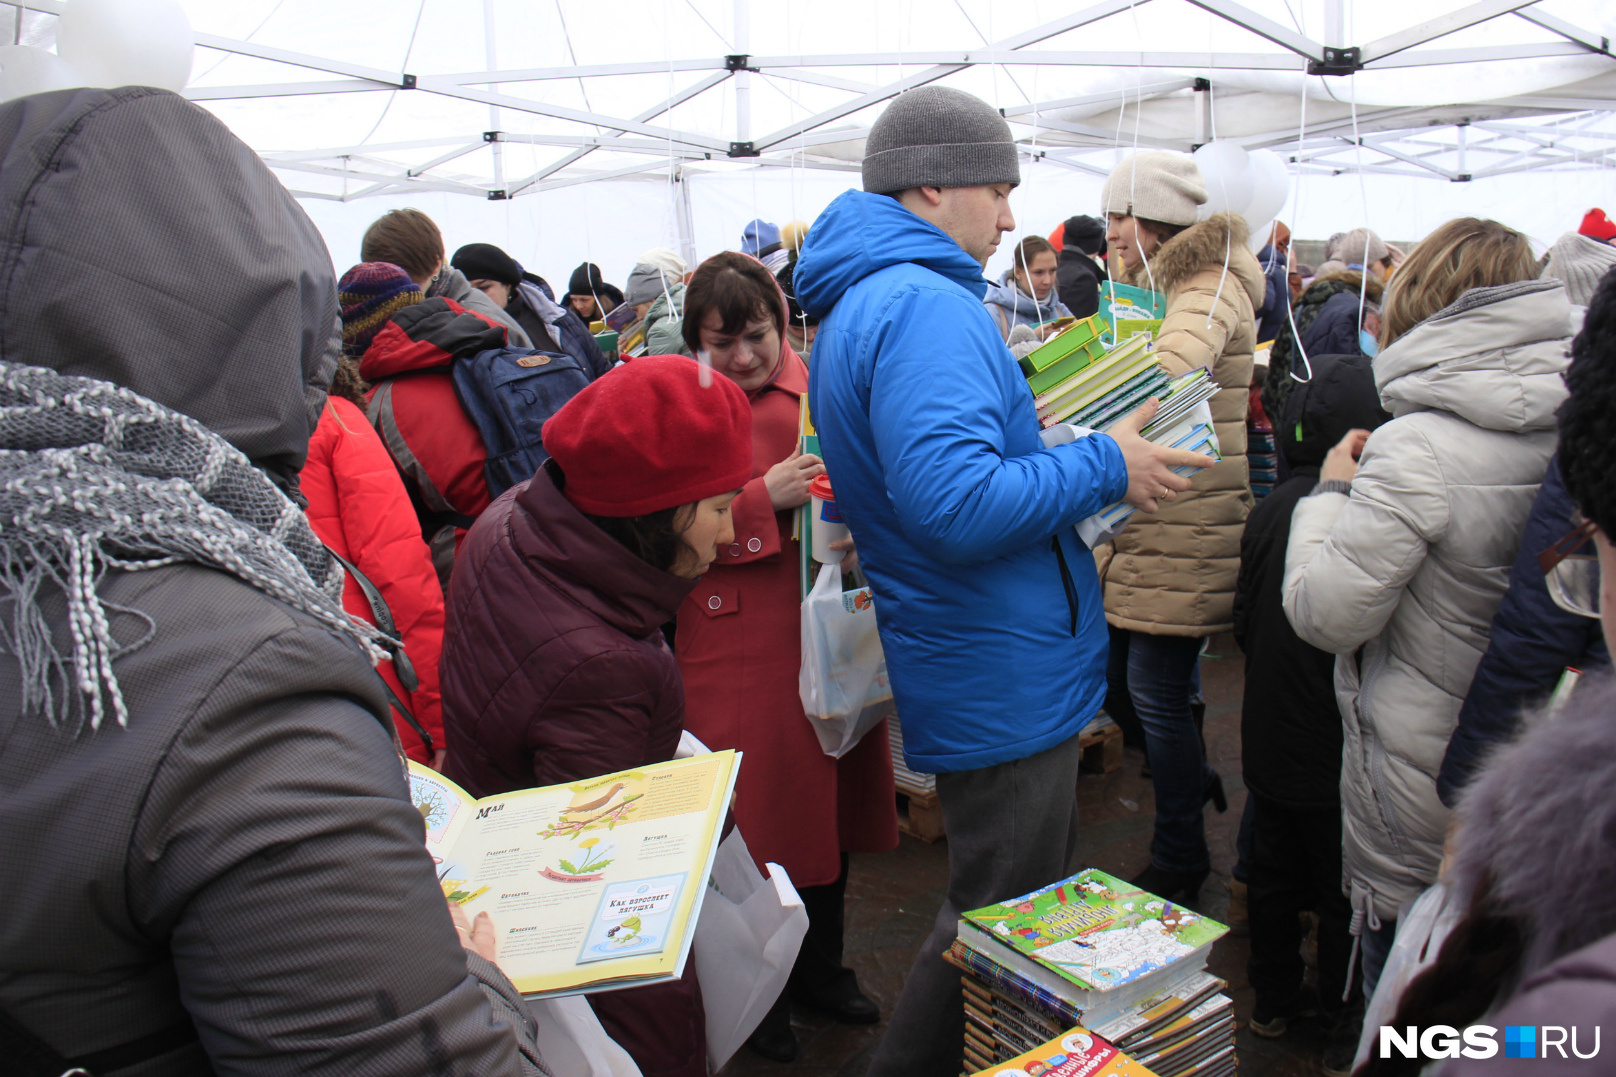 Шатер набит покупателями, готовыми за раз потратить на детские книжки 2500 рублей